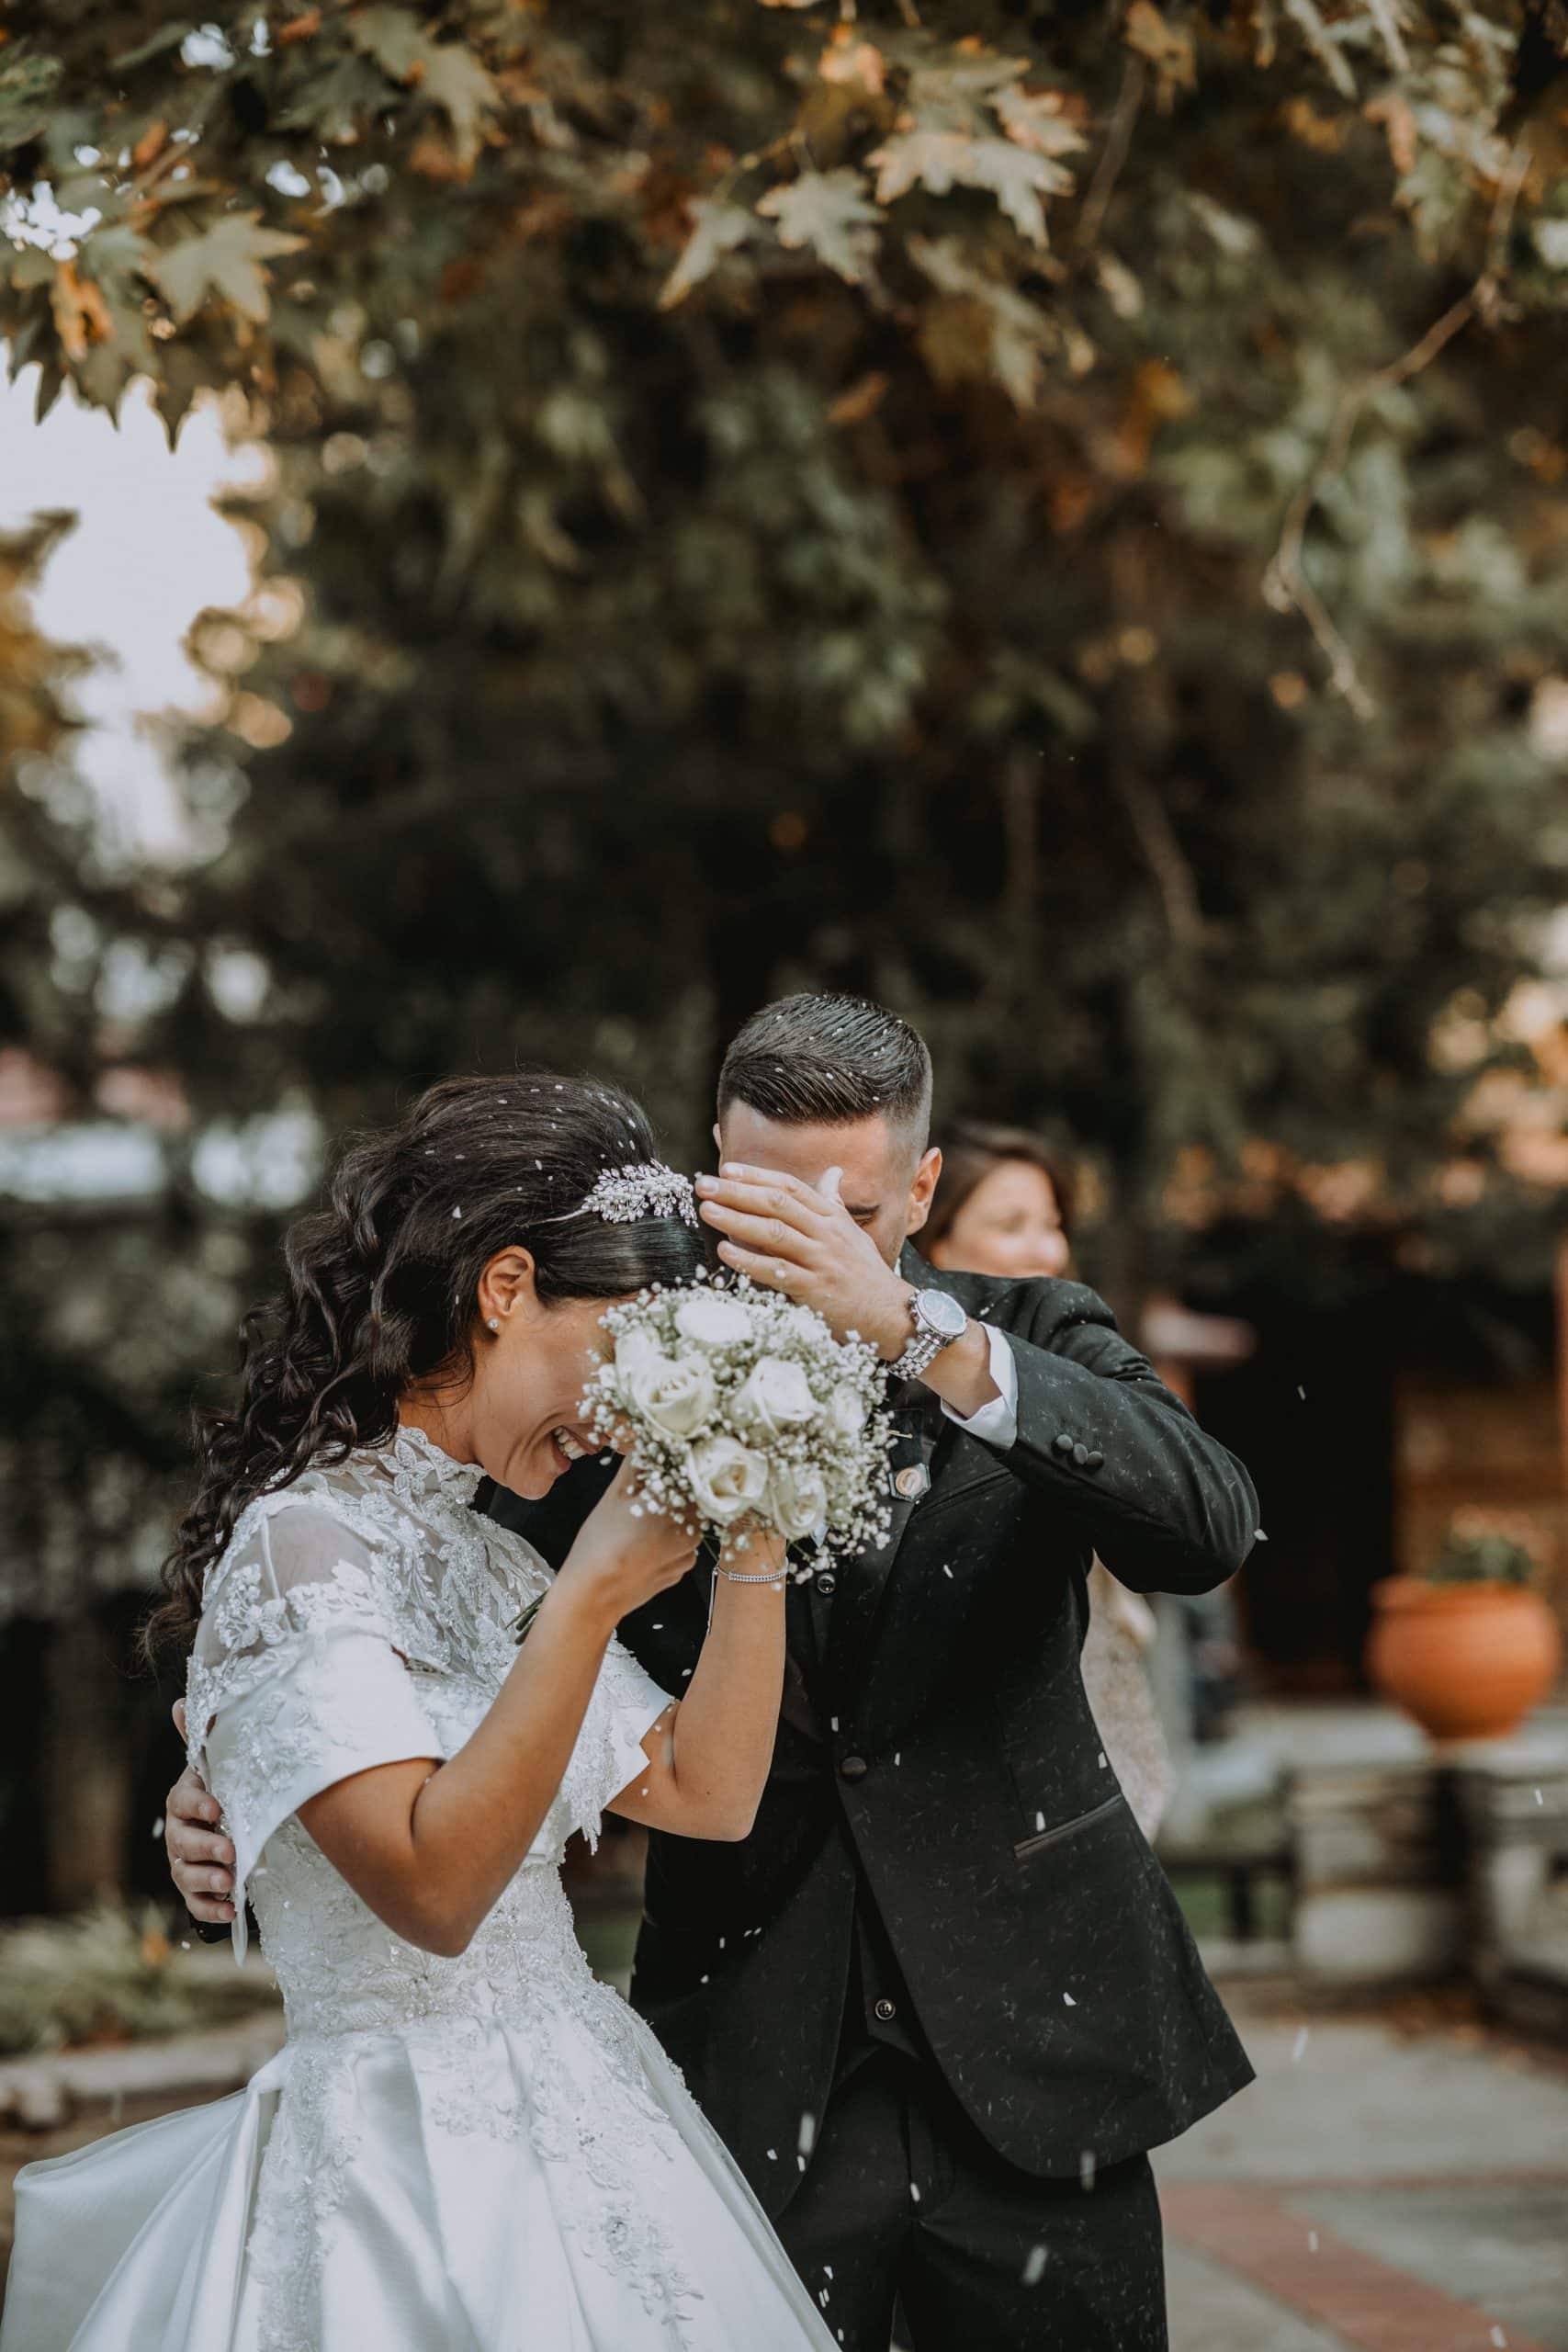 ζευγάρι φωτογραφία γάμου φωτογράφος  next day φωτογραφιση φωτογράφηση γάμος θεσσαλονίκη θεσσαλονικη νεονυμφοι που κοιτιούνται δάσος φύση κρυμμένοι πίσω απο την ανθοδέσμη για να προφυλαχθούν απο το ρύζι, μια ρομαντική, αστεία και συγκινητική εικόνα , φωτογράφος γάμου Γιώργος Καρασαββίδης Θεσσαλονίκη